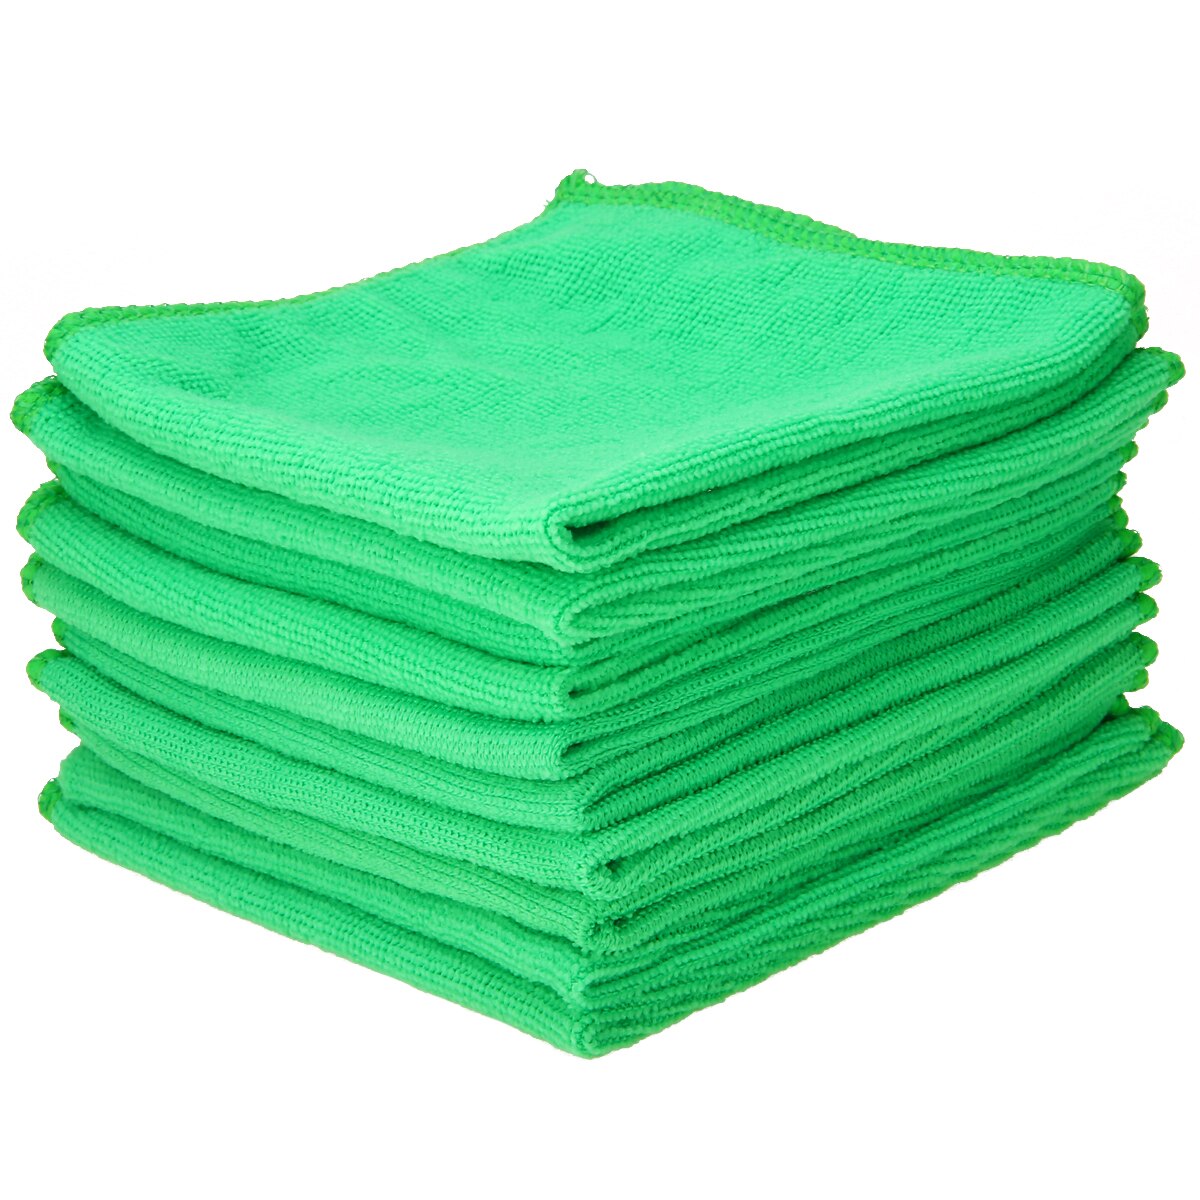 Mayitr 10 stuks Microfiber Wassen Schone Handdoeken Poetsdoeken Auto Meubels Reinigen Stofdoek Zachte Doeken 30x30cm Groen